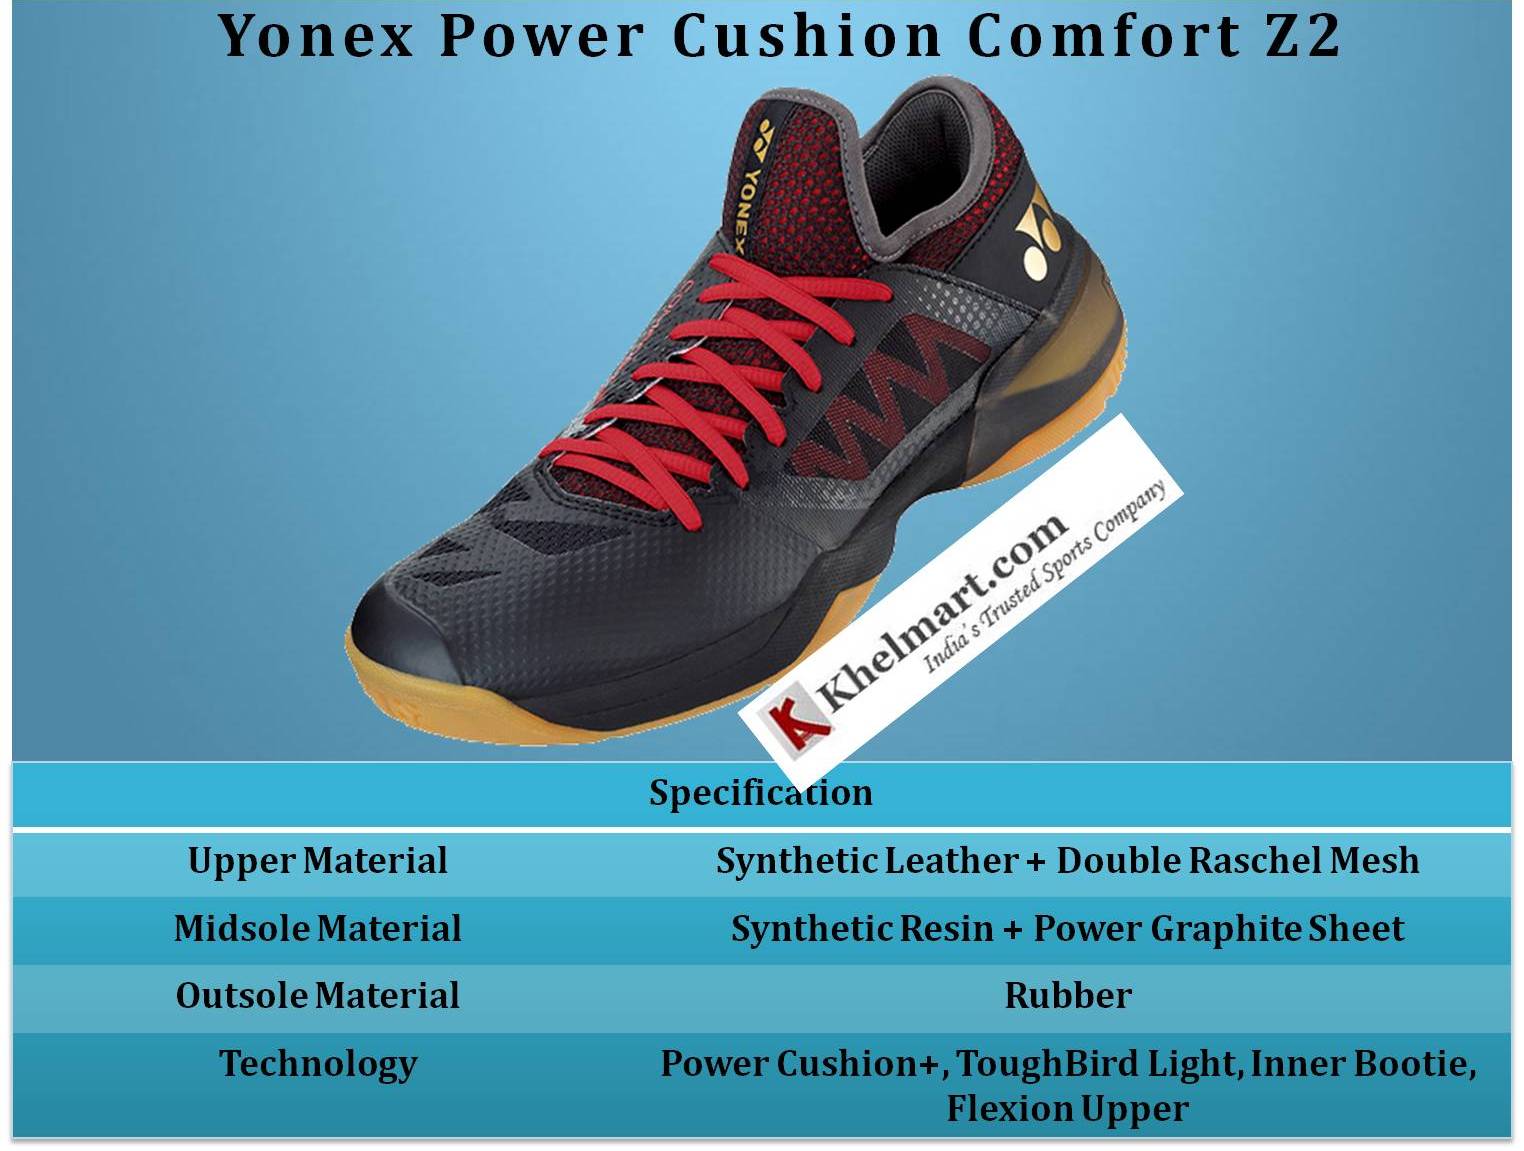 Yonex_Power_Cushion_Comfort_Z2_Badminton_Shoes_Specification_Khelmart